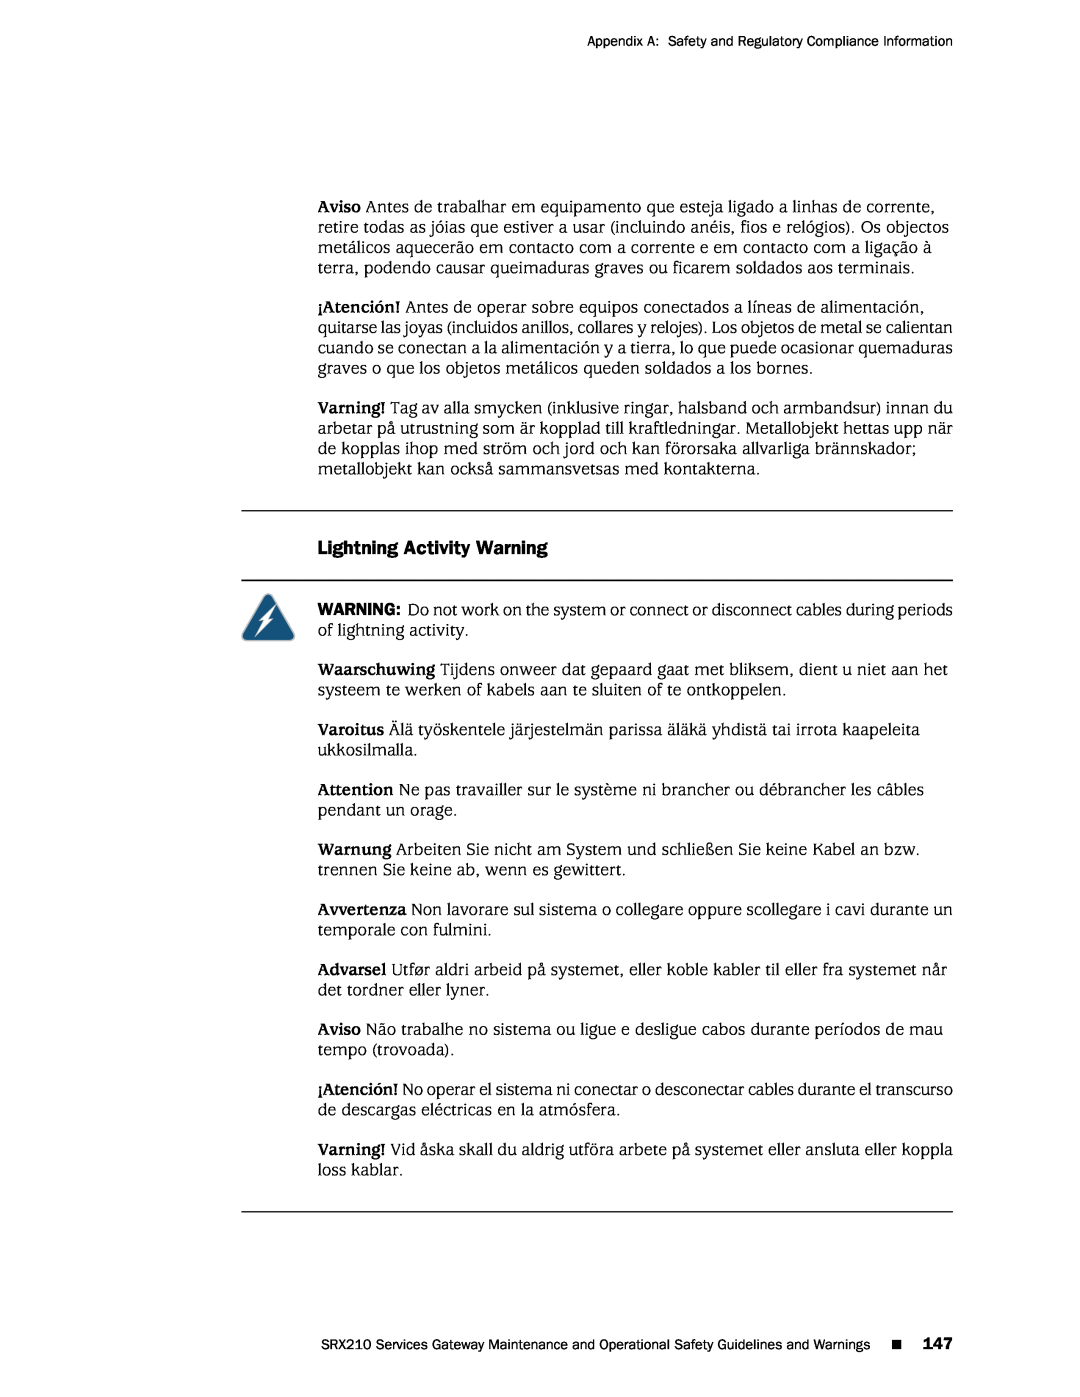 Juniper Networks SRX 210 manual Lightning Activity Warning 